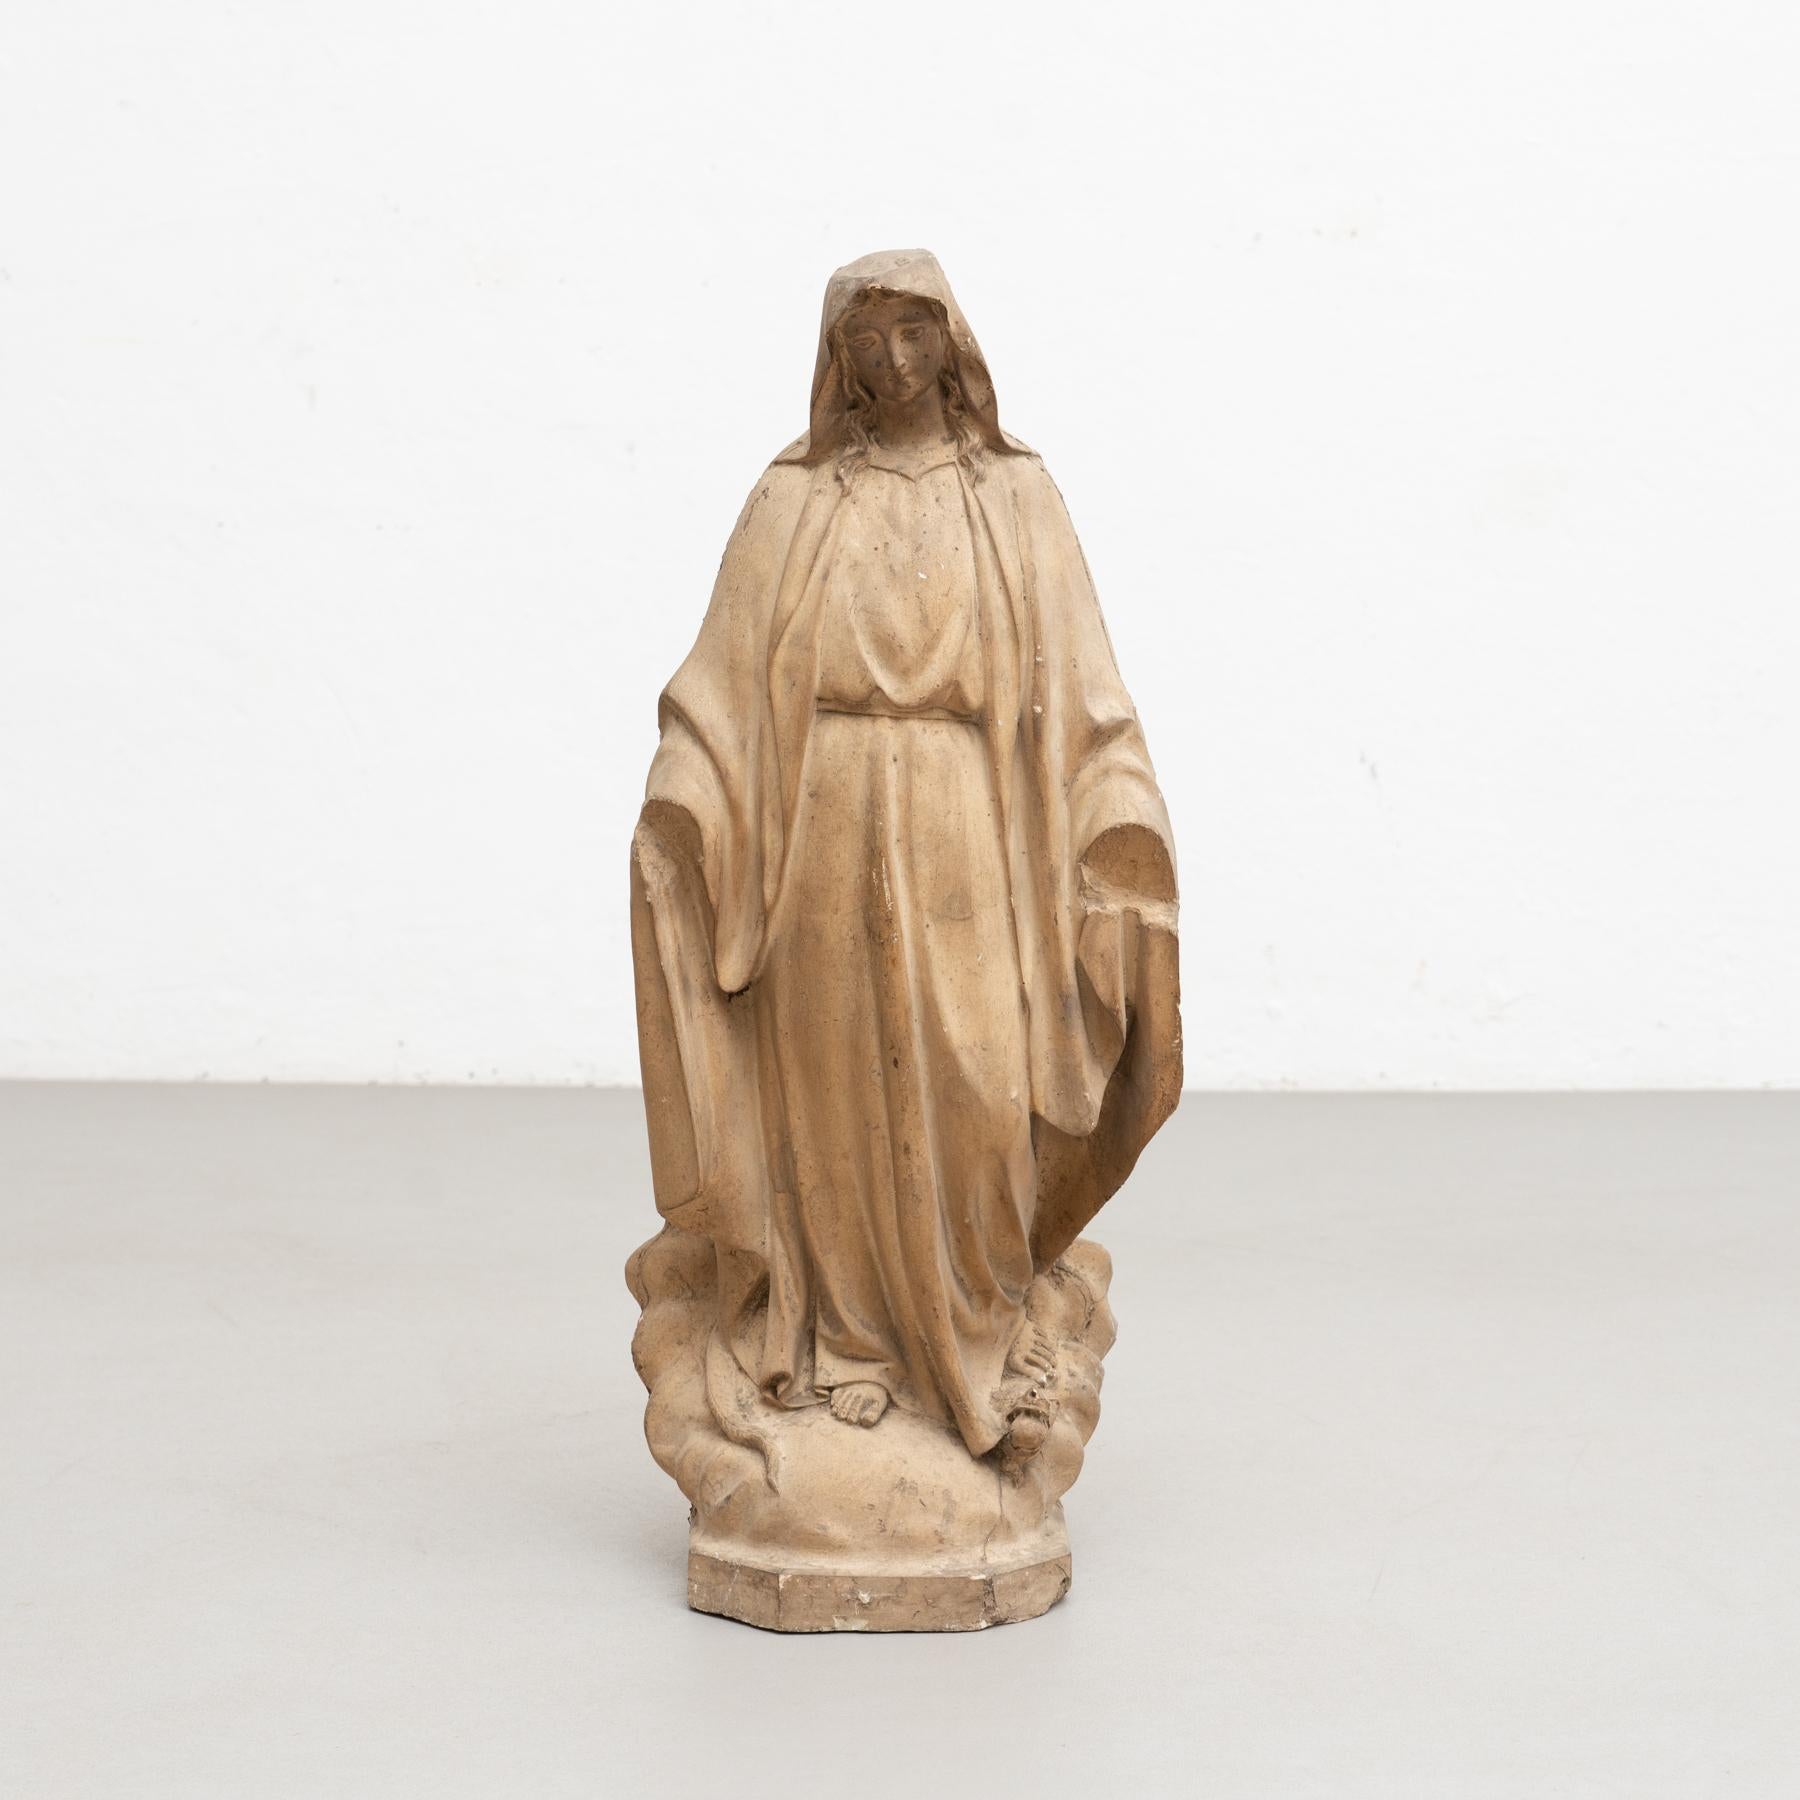 Traditionelle religiöse Gipsfigur einer Jungfrau.

Hergestellt in einem traditionellen katalanischen Atelier in Olot, Spanien, um 1950.

Originaler Zustand mit geringen alters- und gebrauchsbedingten Abnutzungserscheinungen, der eine schöne